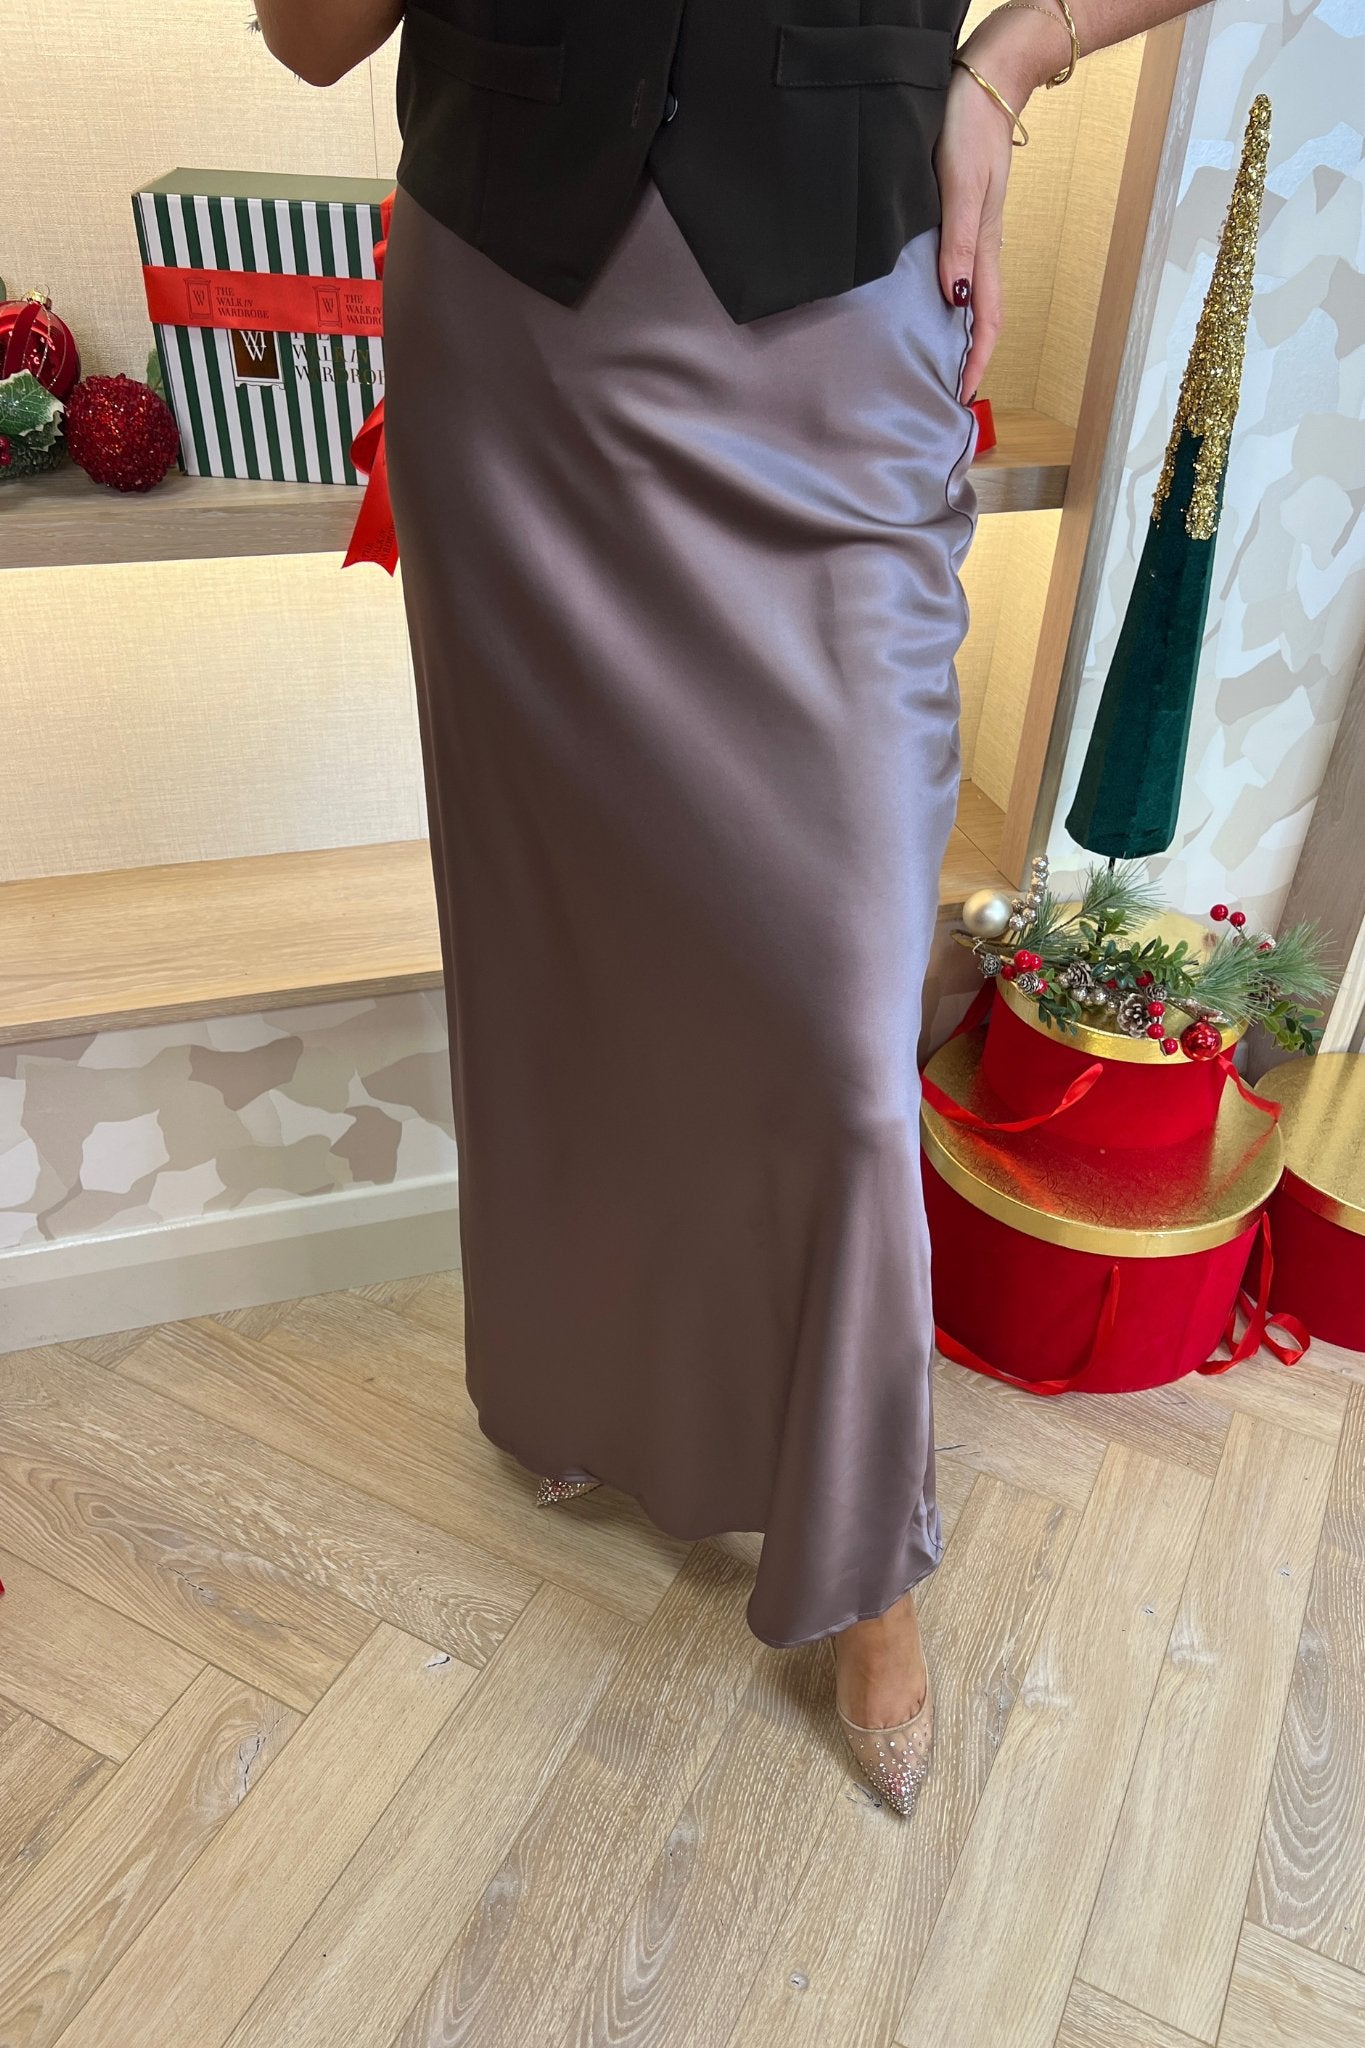 Elsa Longline Satin Skirt In Mauve - The Walk in Wardrobe